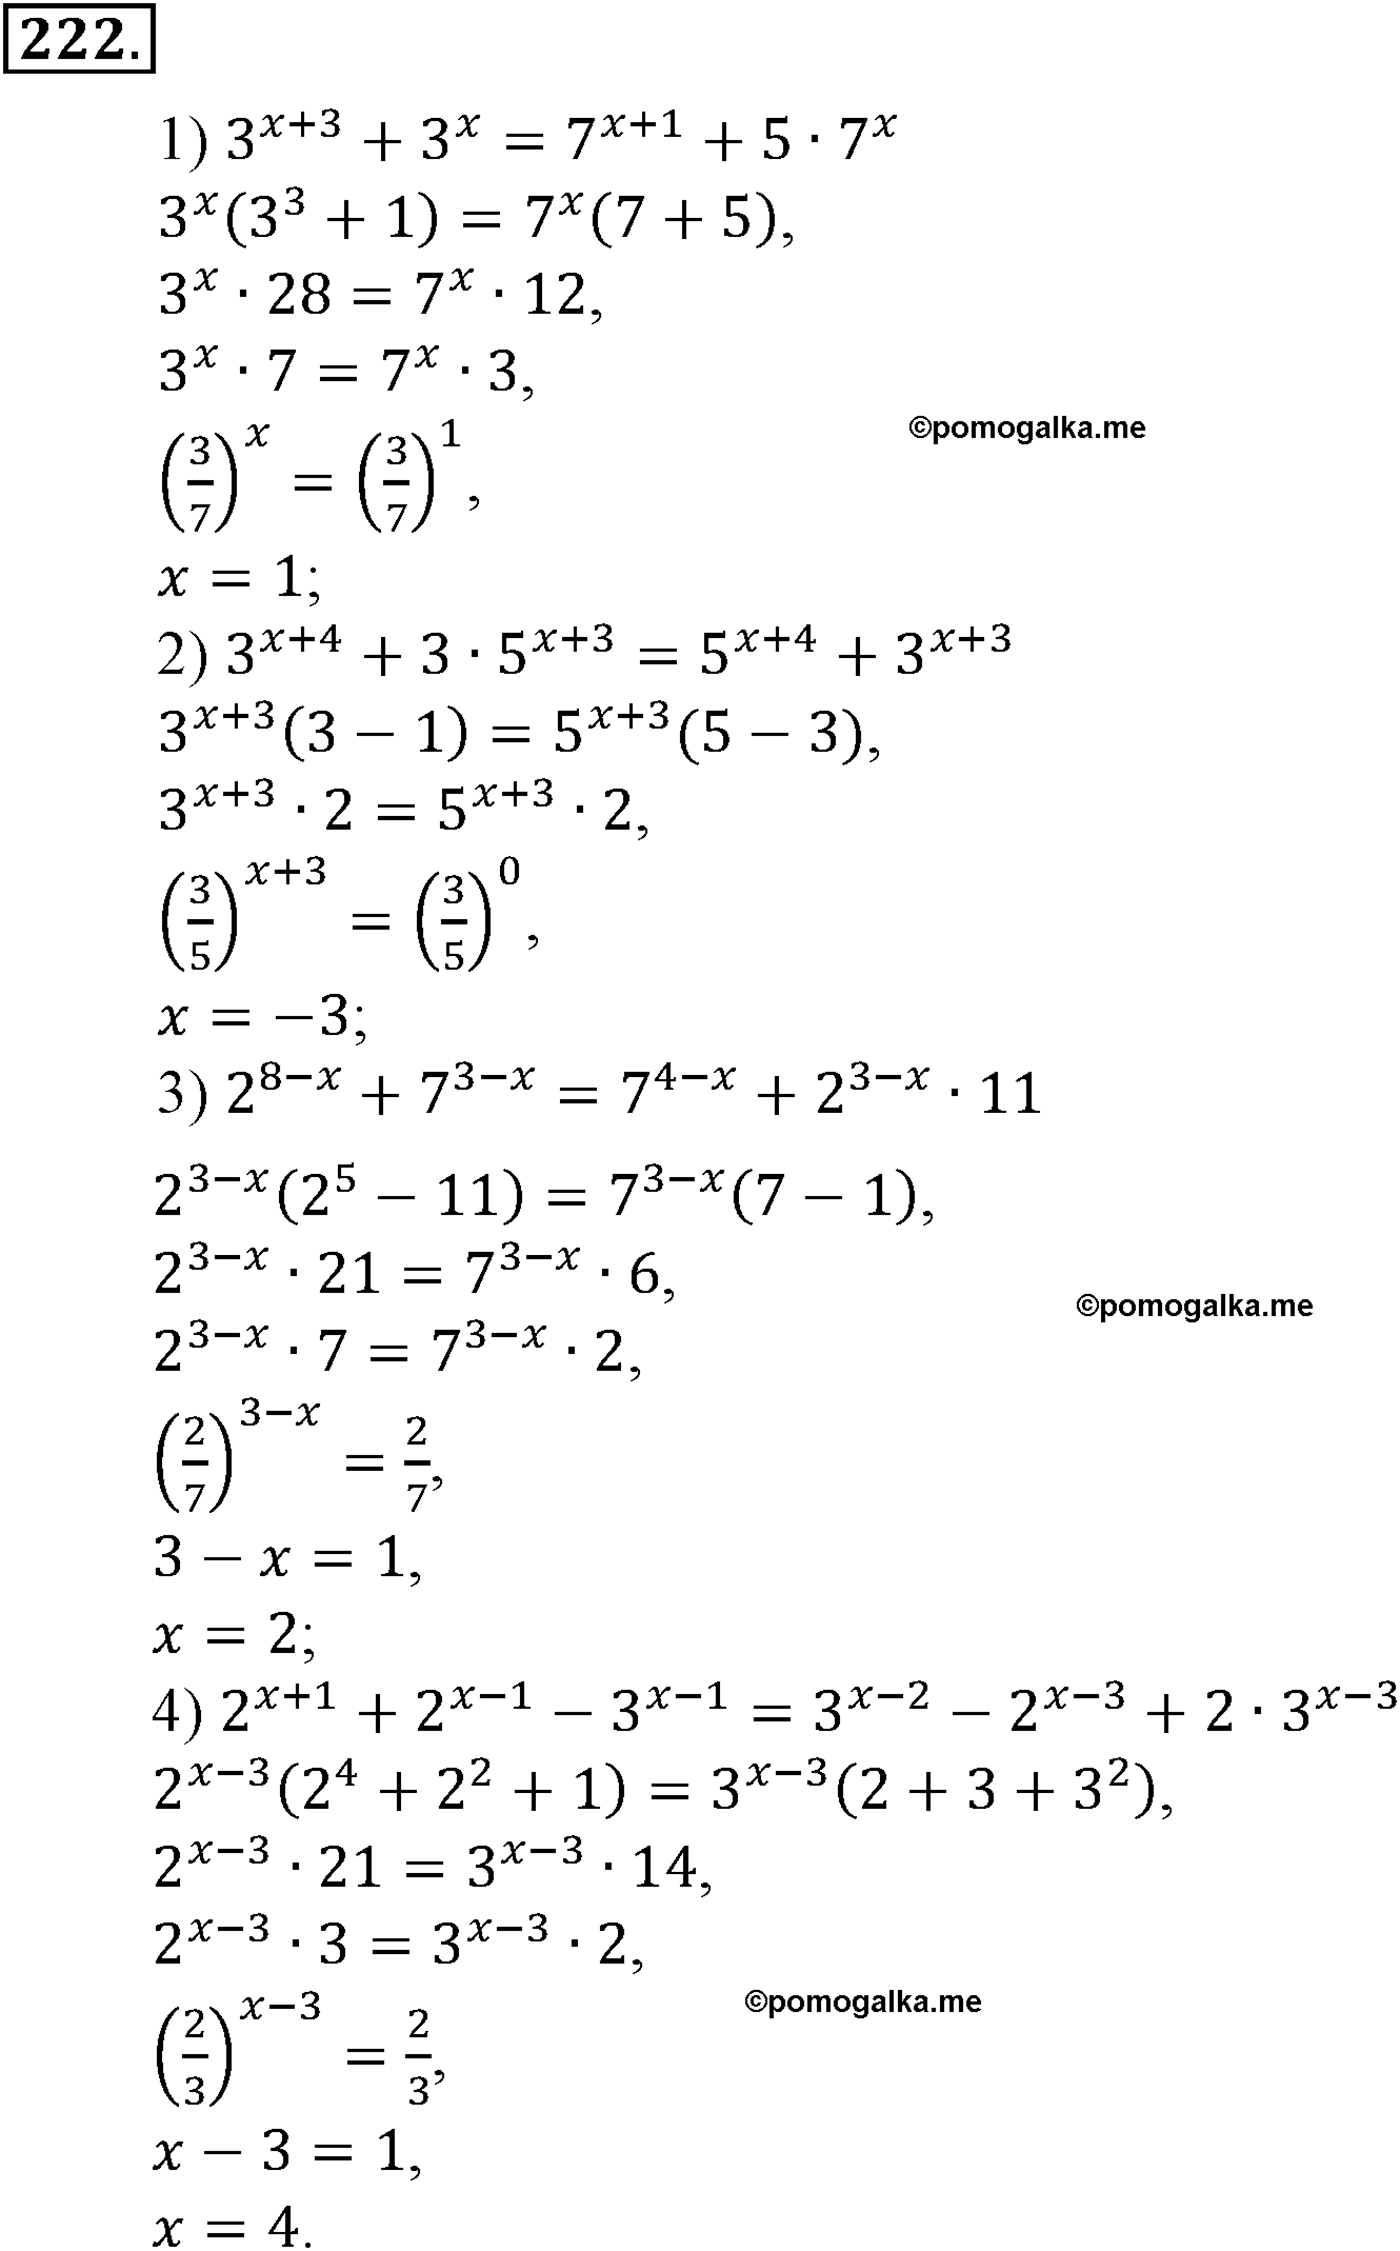 разбор задачи №222 по алгебре за 10-11 класс из учебника Алимова, Колягина